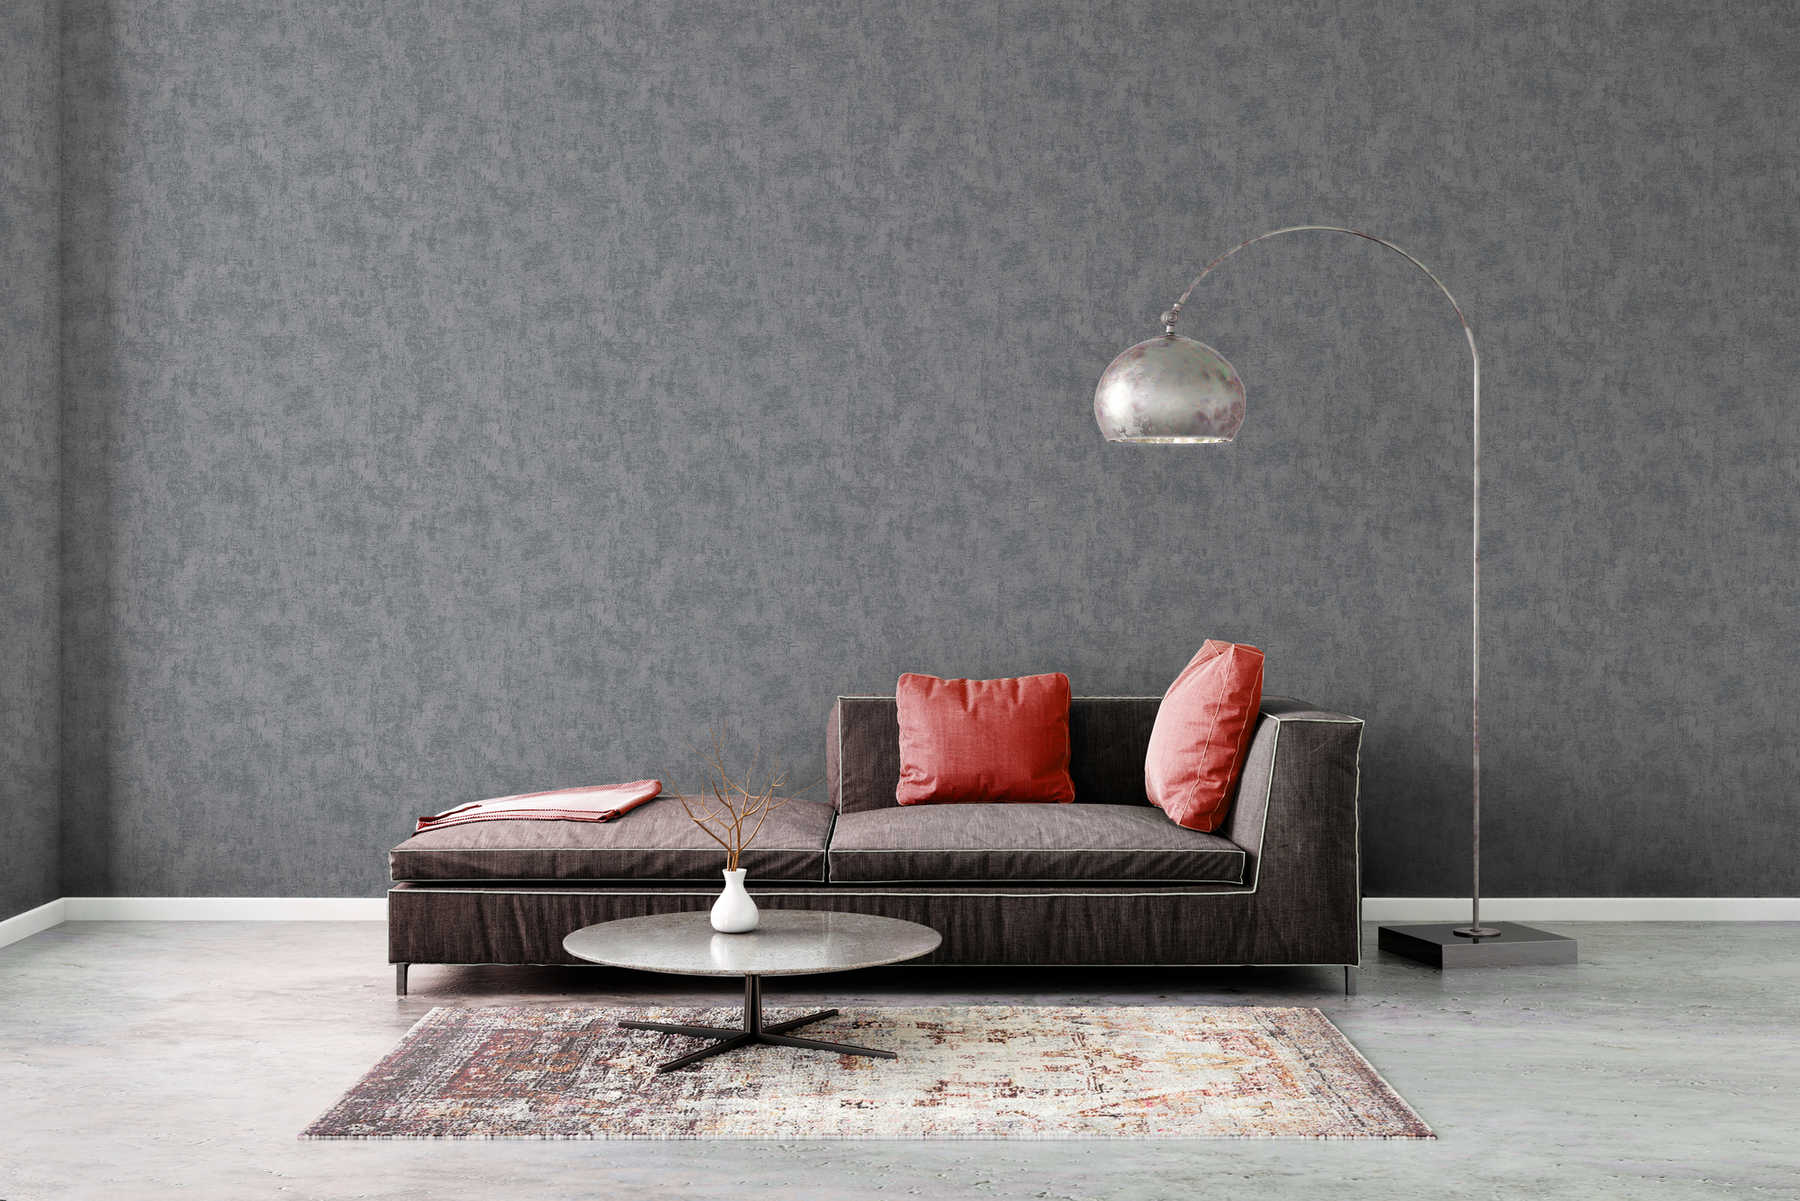             Dark non-woven wallpaper with concrete look - grey
        